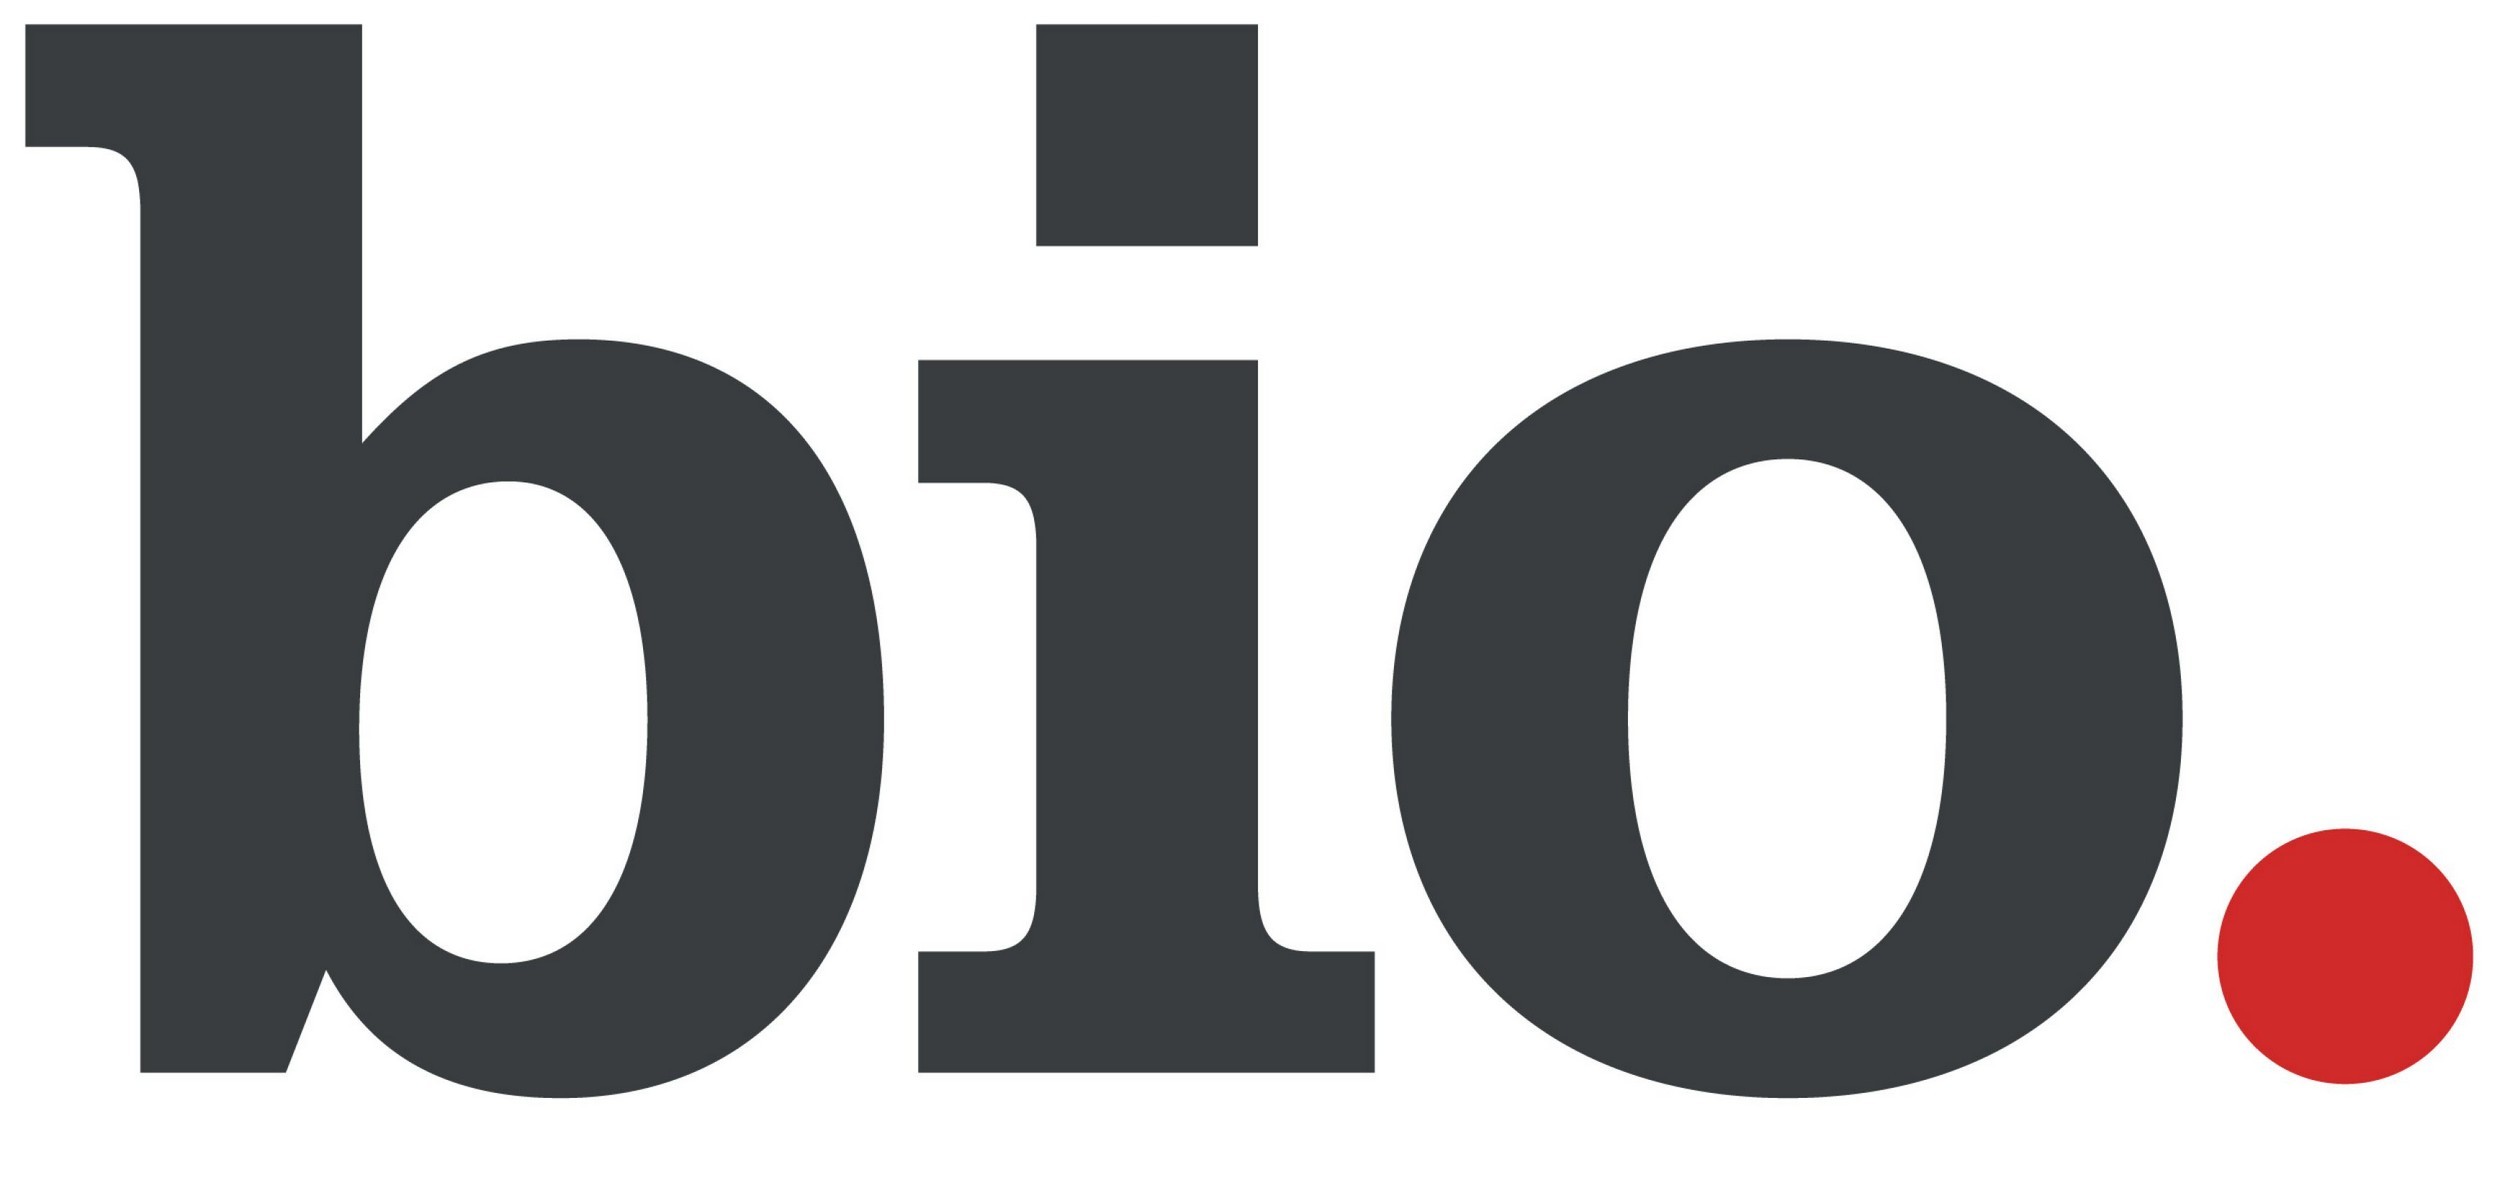 Bio - The Biography Channel Logo [EPS-PDF]